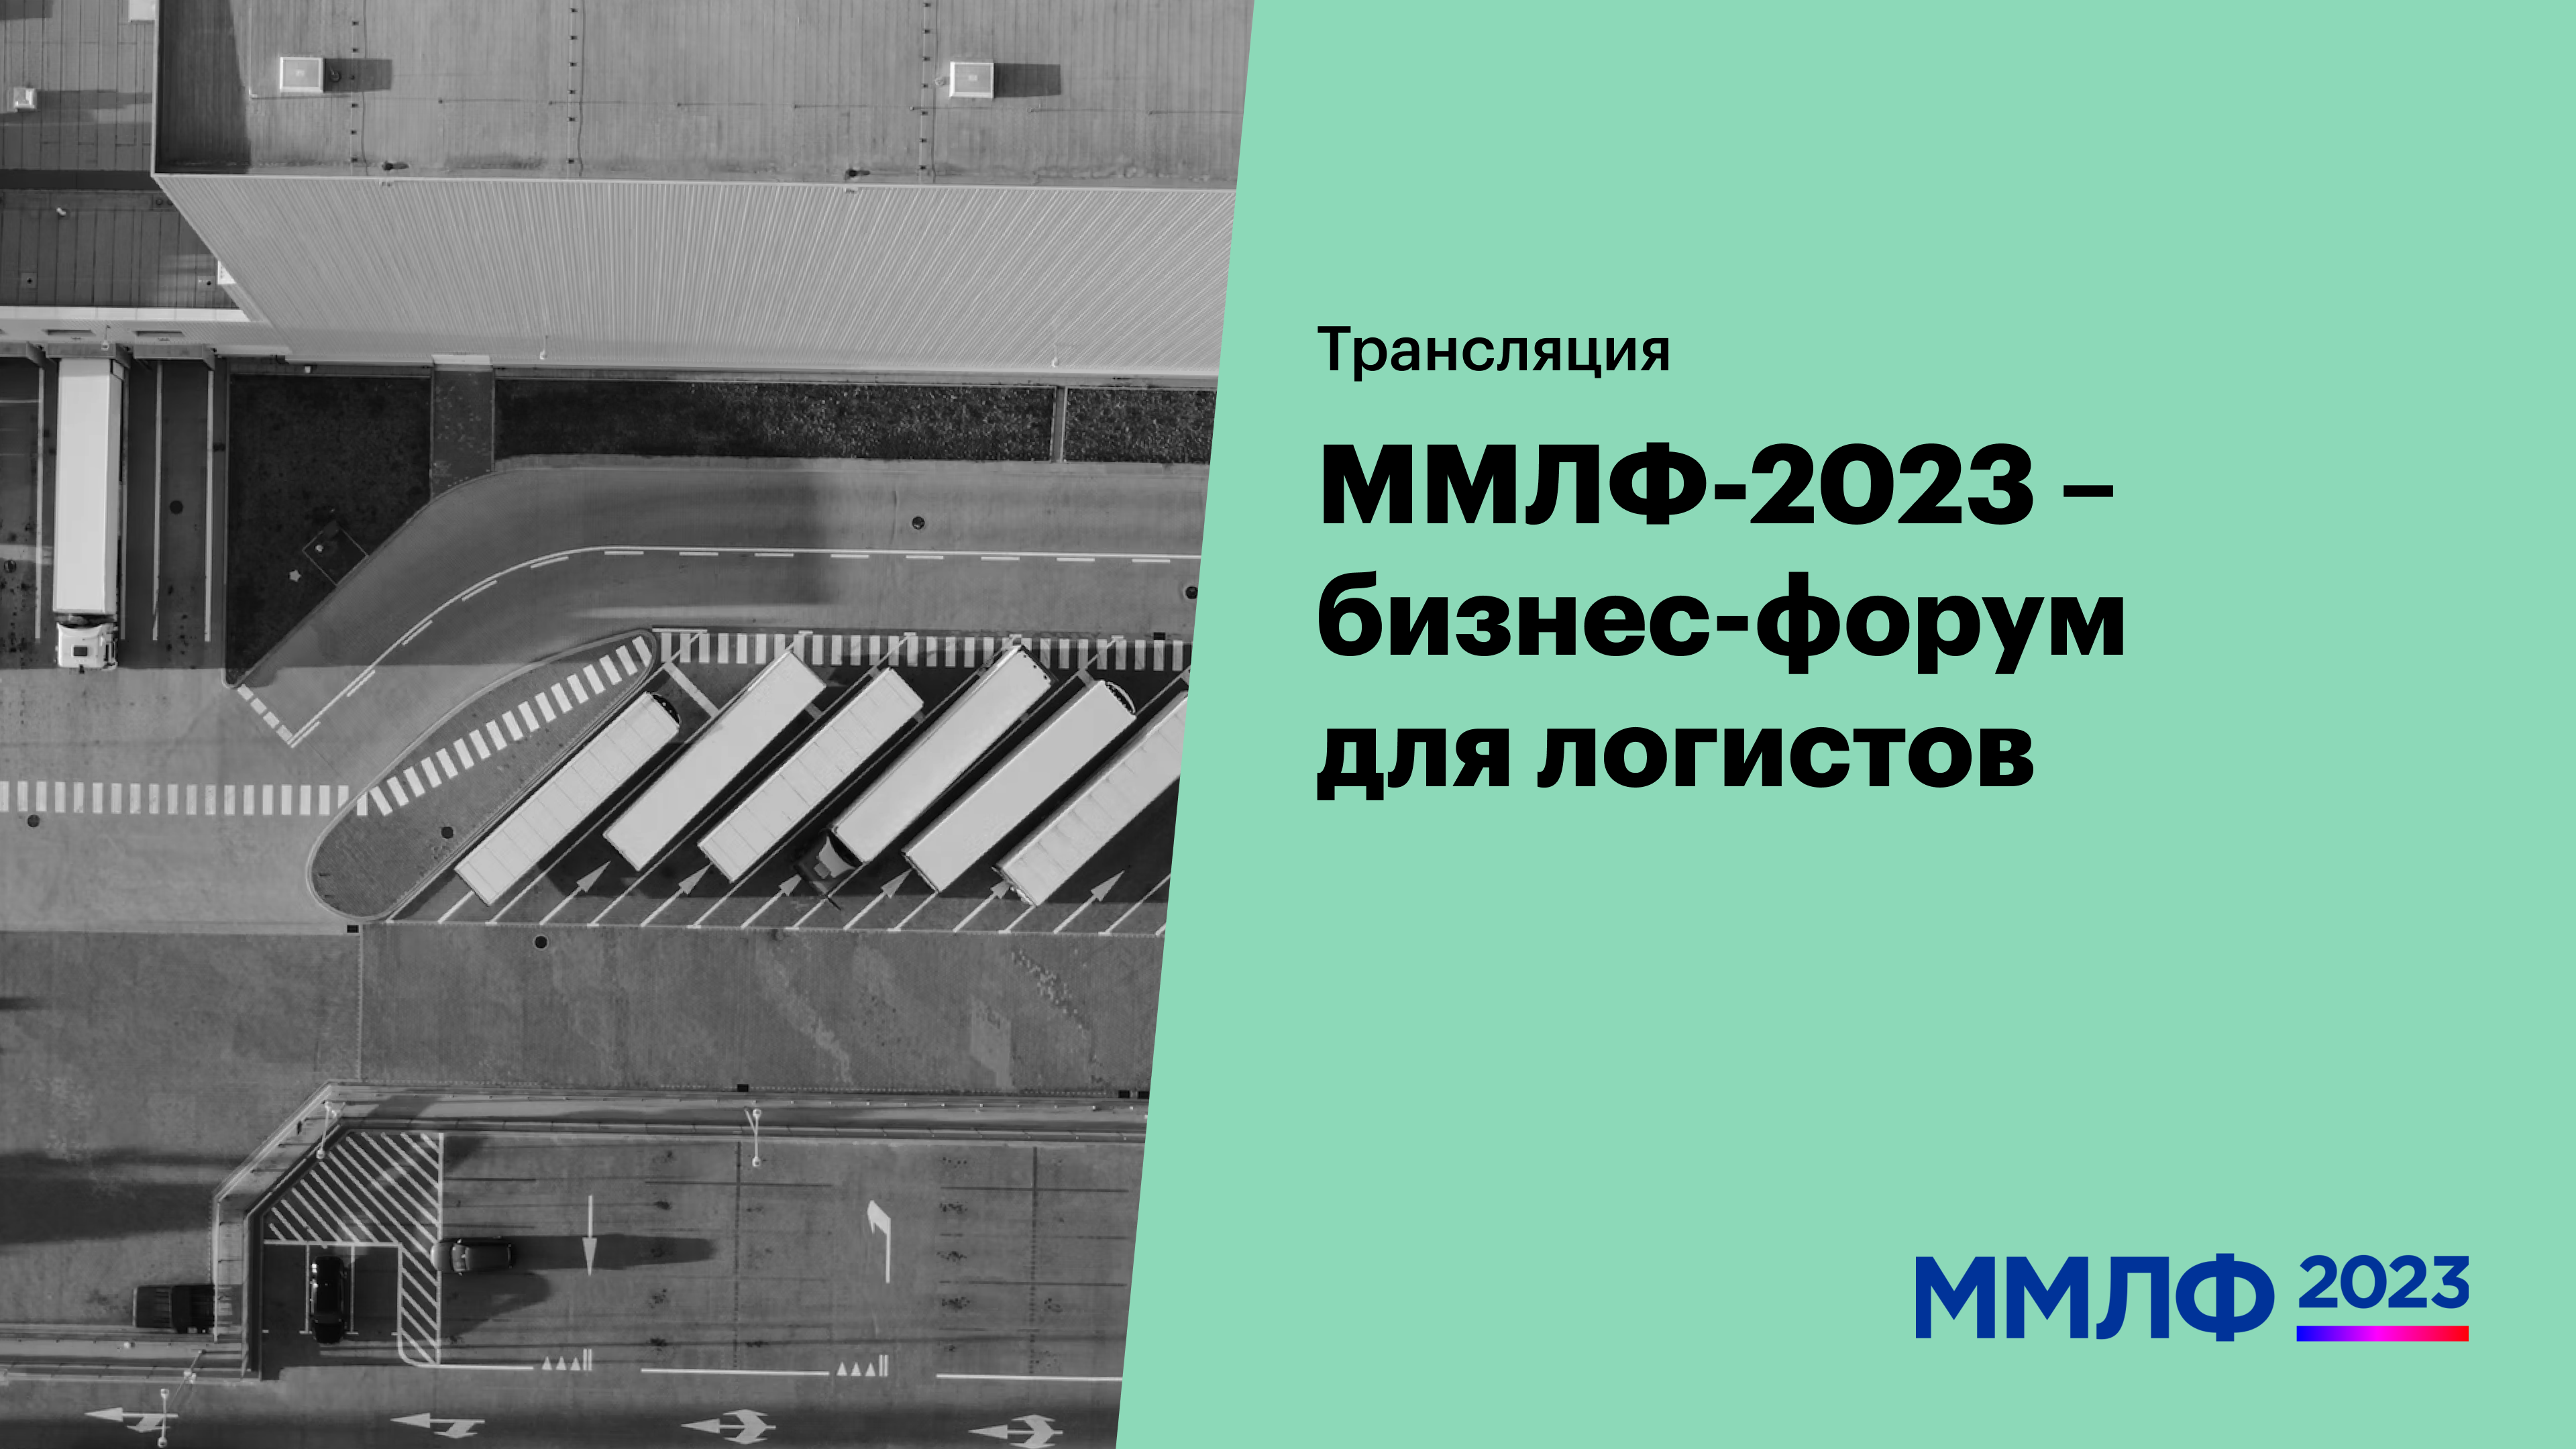 ММЛФ-2023 — бизнес-форум для логистов